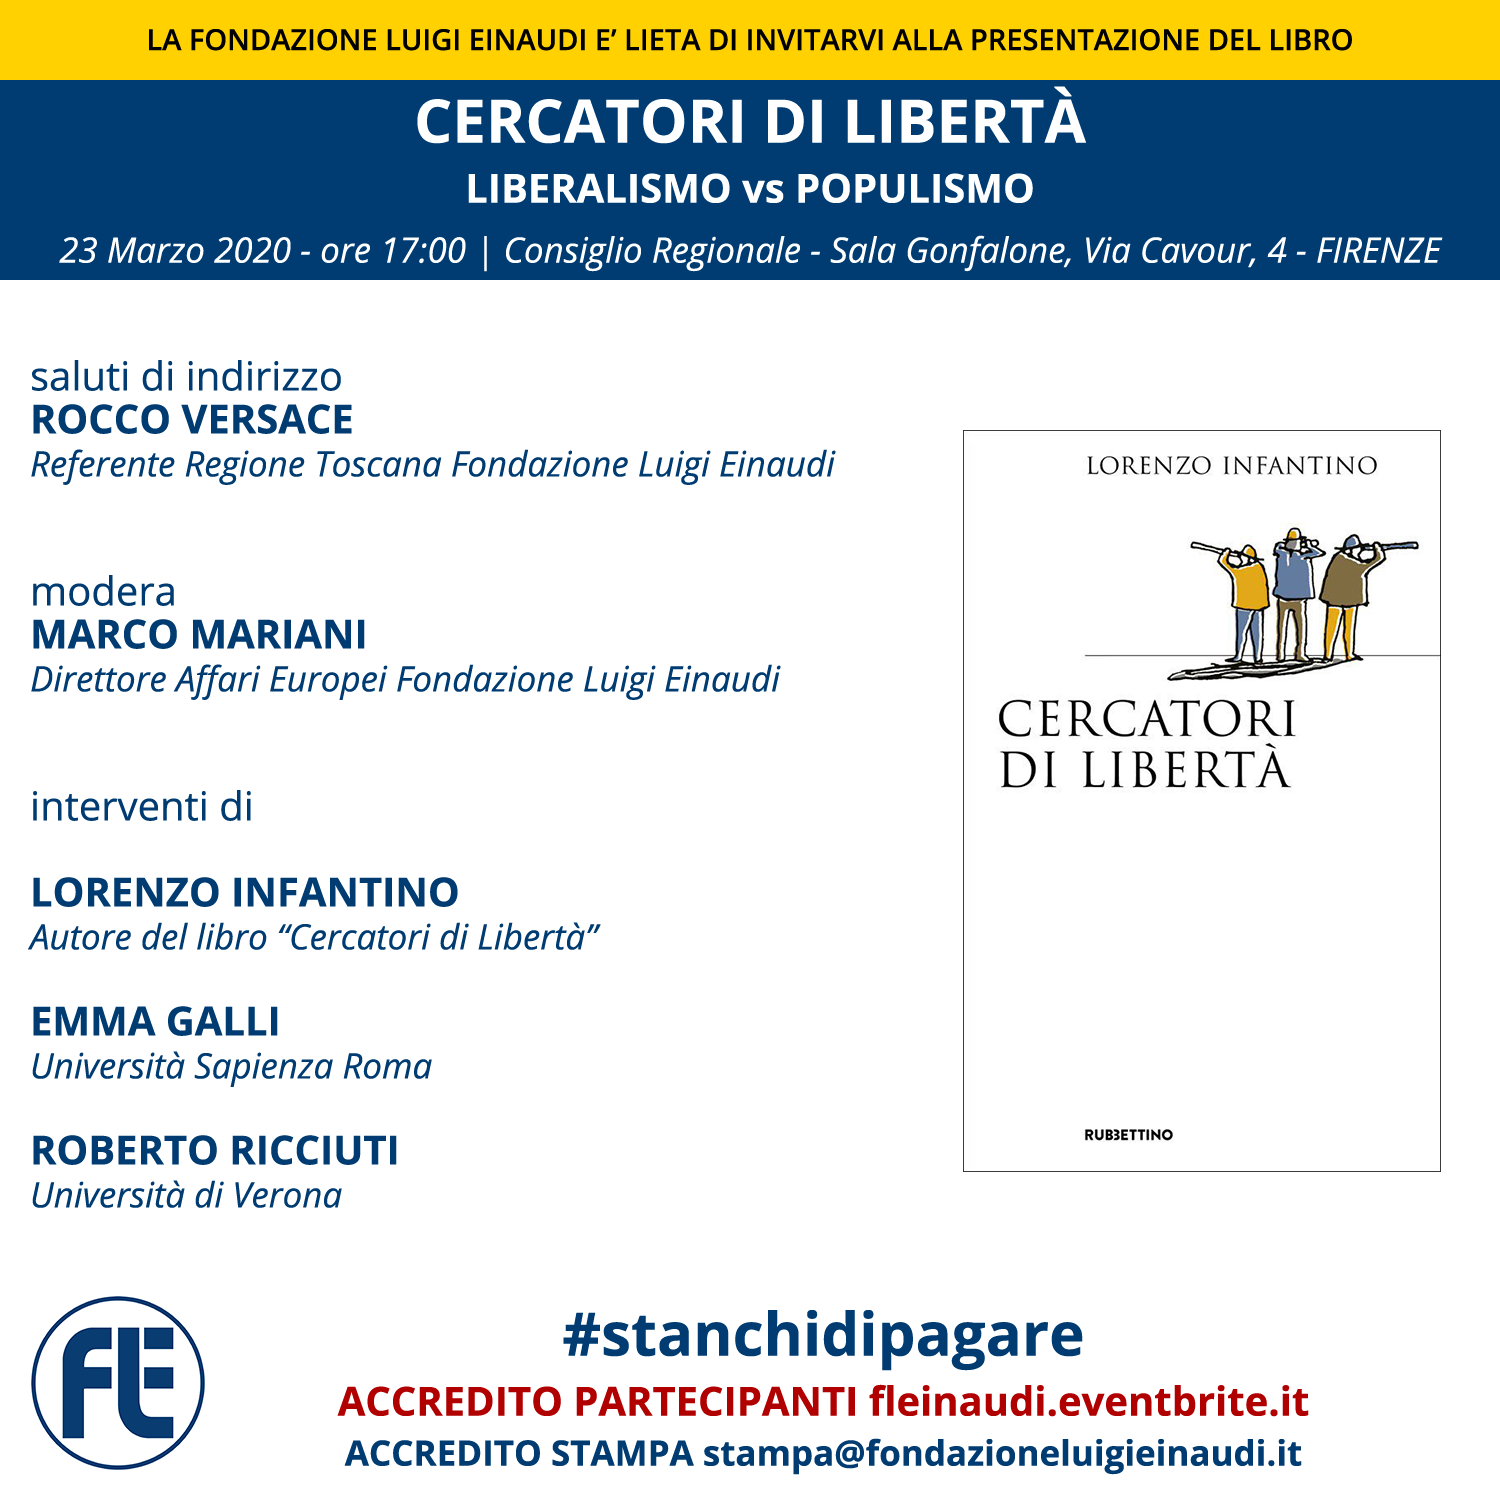 Presentazione del libro “Cercatori di Libertà” di Lorenzo Infantino a Firenze #stanchidipagare – Evento rinviato a data da destinarsi, a causa dell’emergenza sanitaria “coronavirus nCoV-2019”